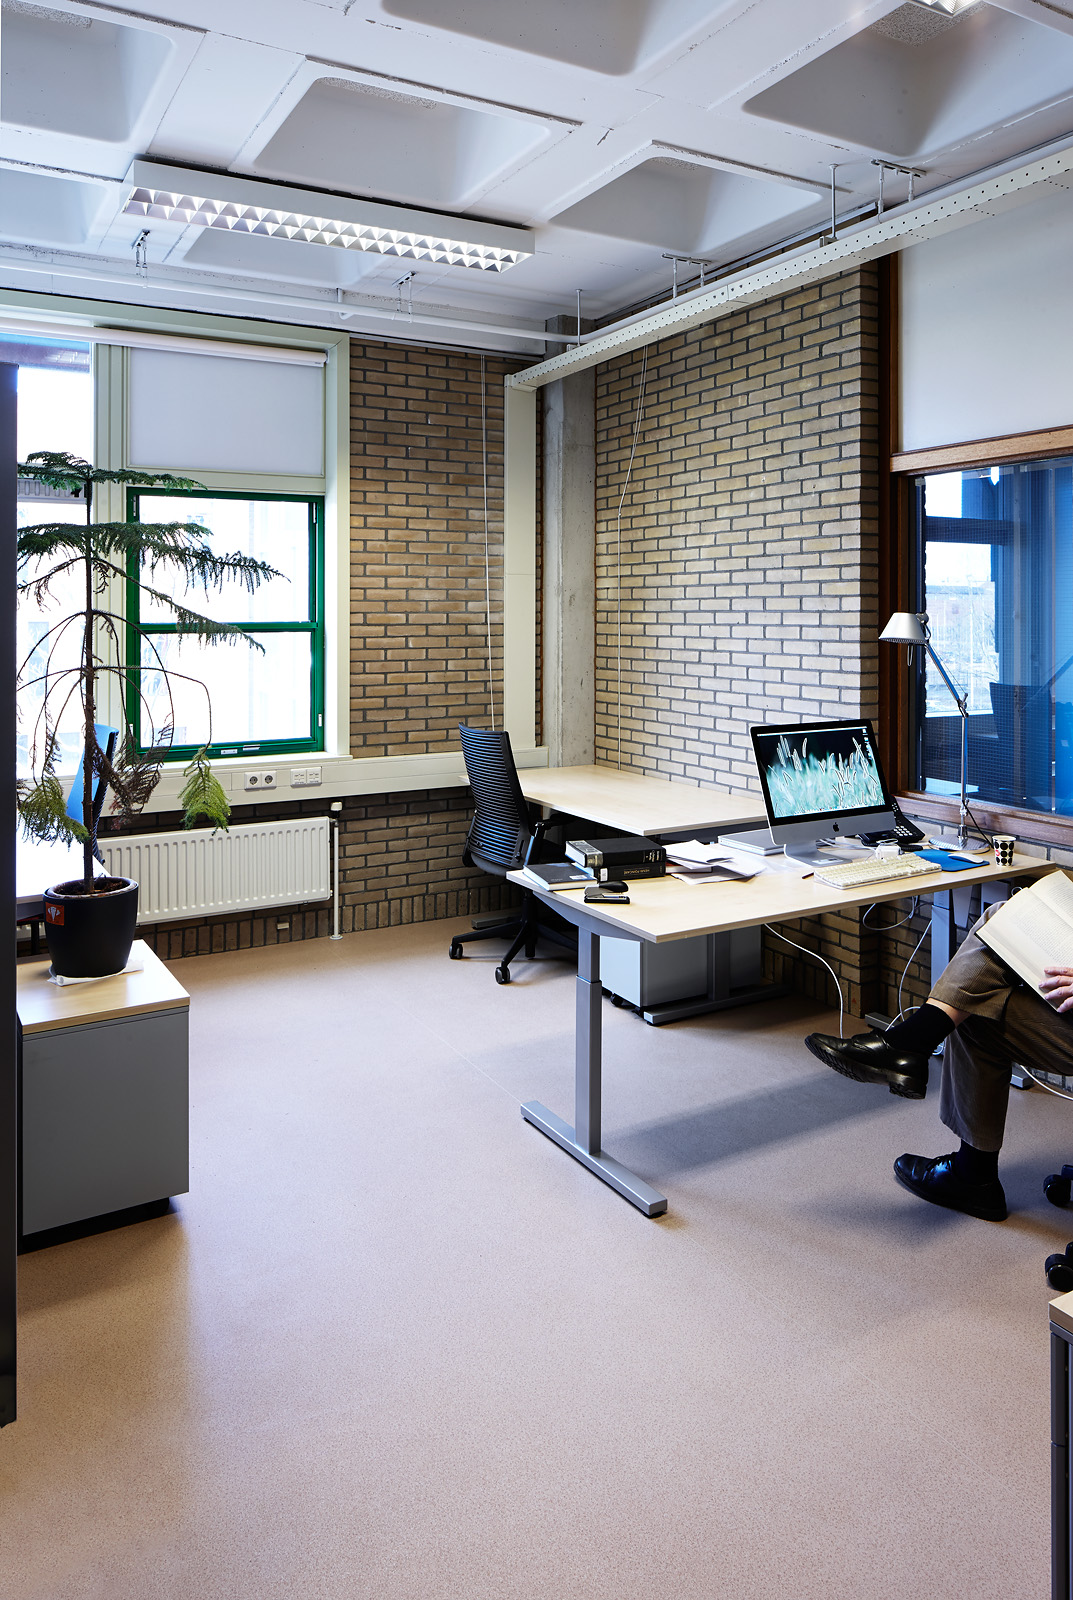 L'une des plus grandes universités des Pays-Bas a choisi le mobilier de qualité d'Alvero.